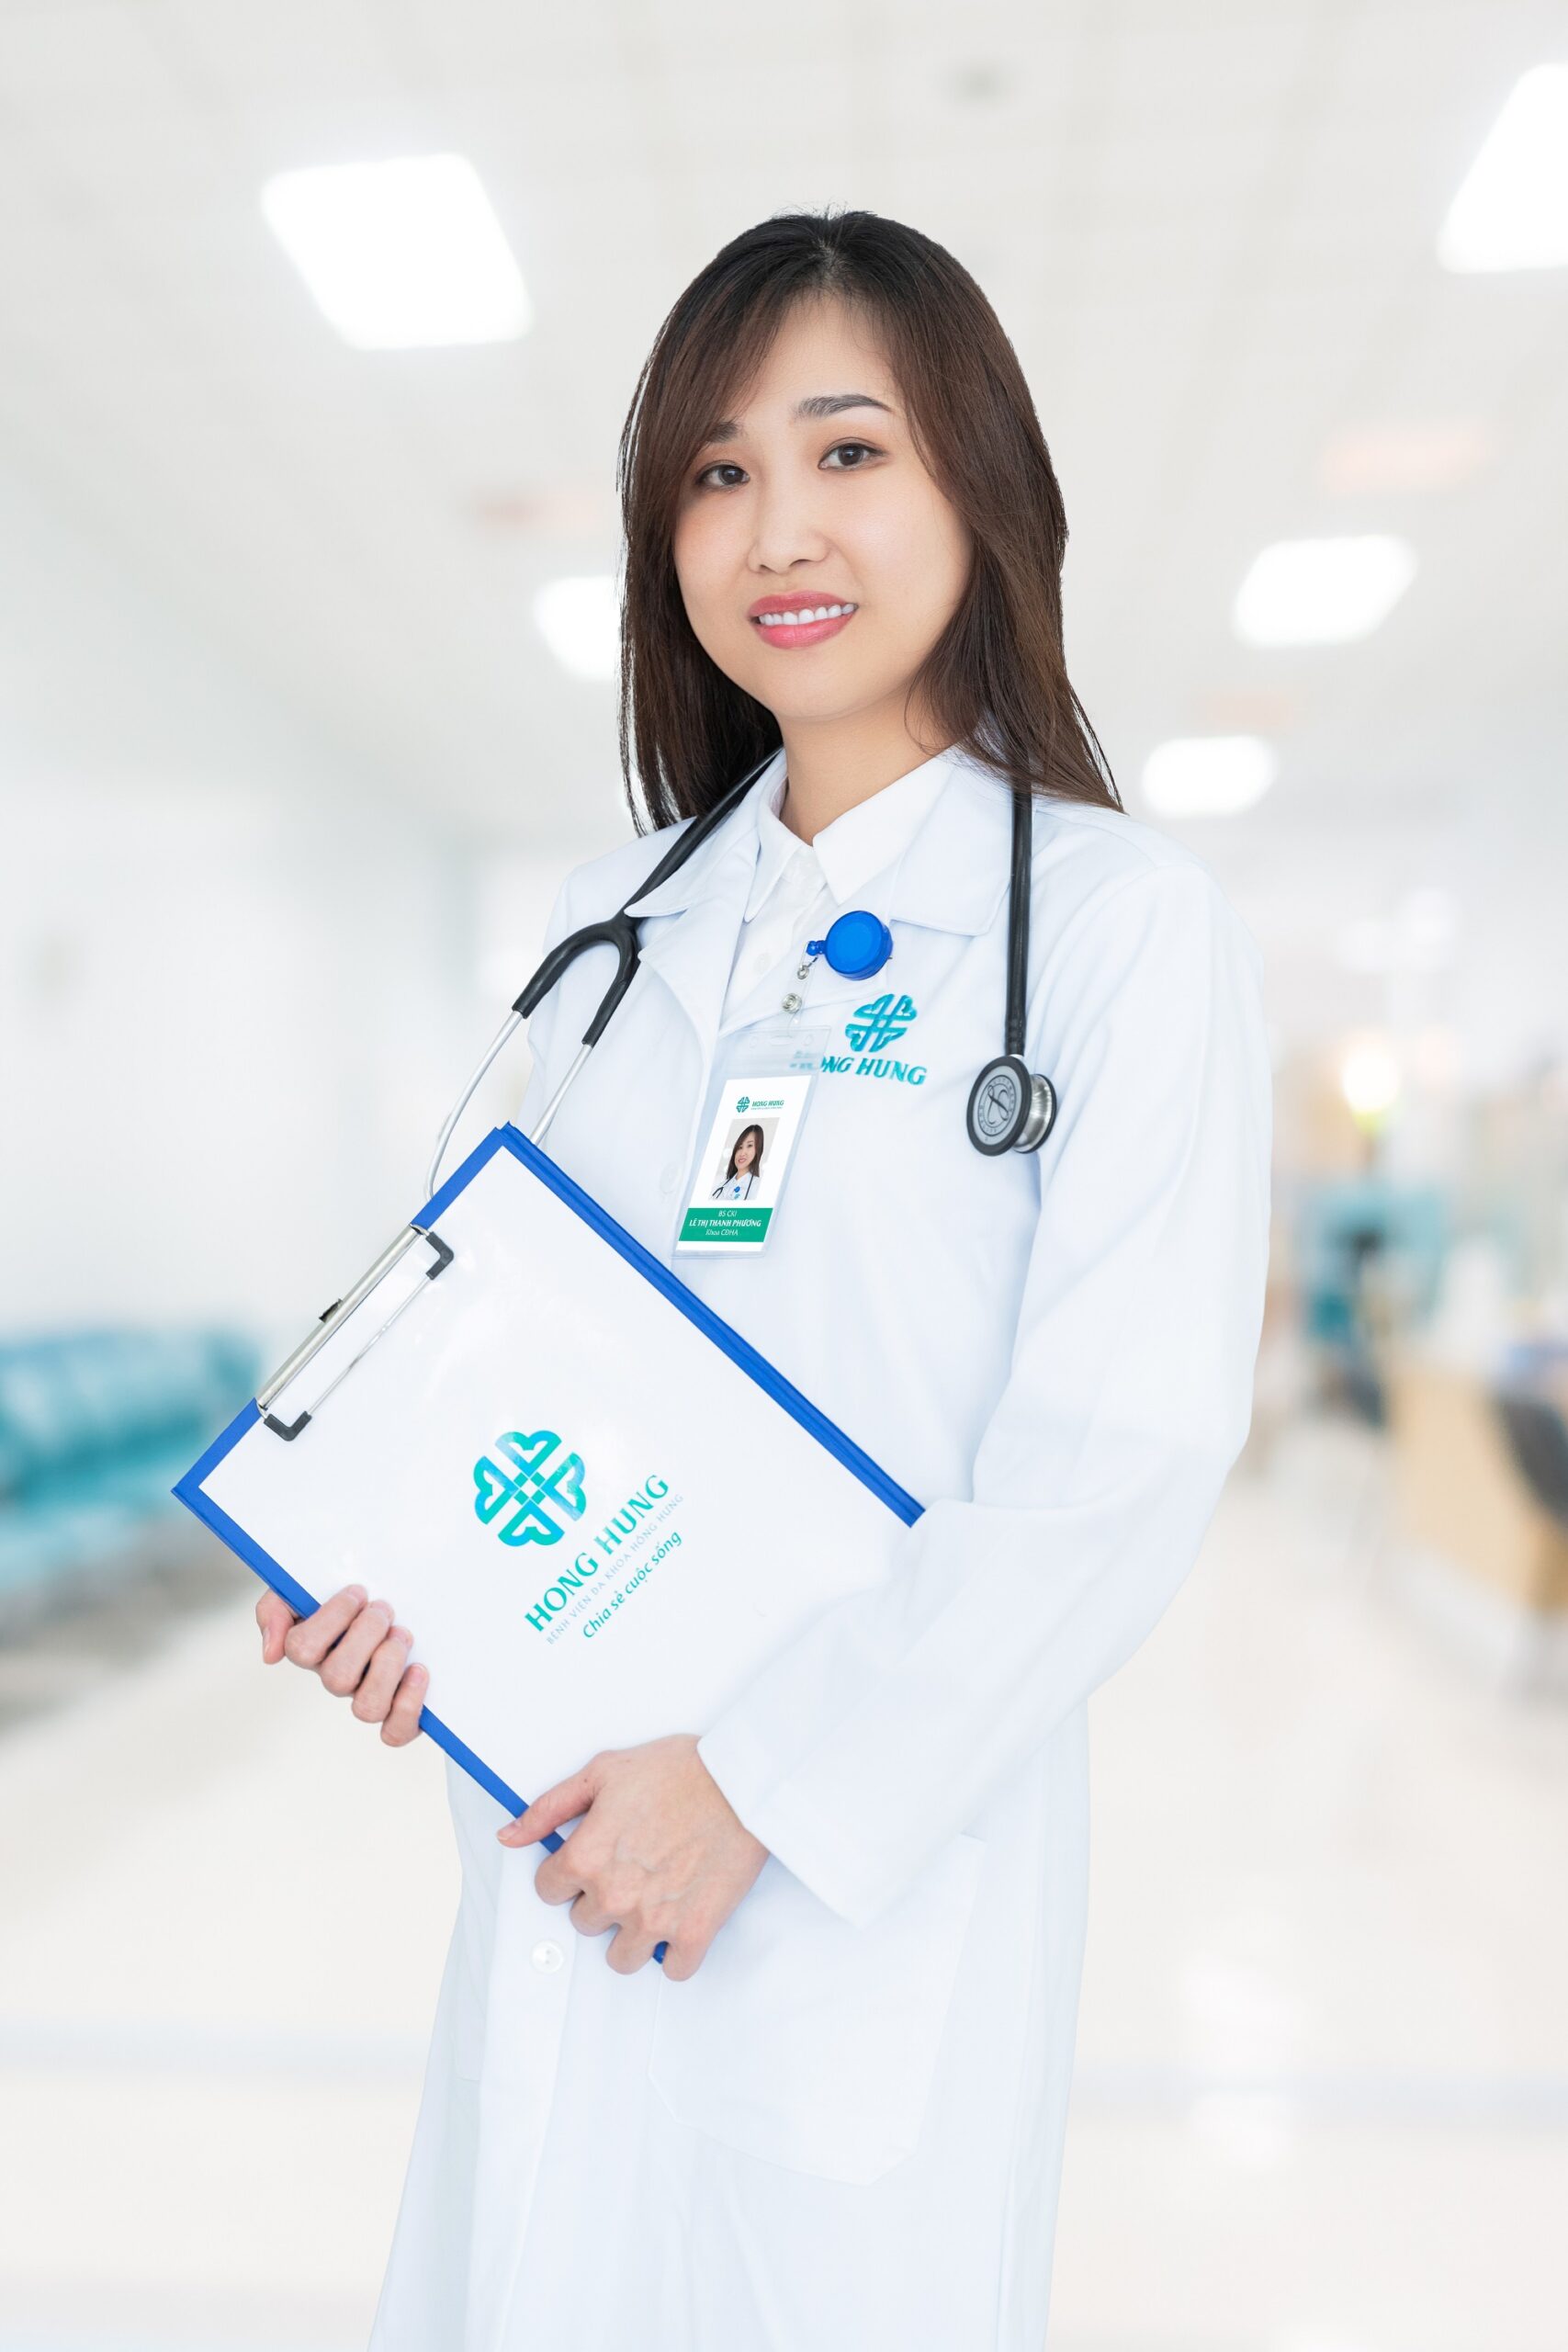 BS CKI. Phan Văn Chí – Khoa Chẩn đoán hình ảnh - Hong Hung Hospital